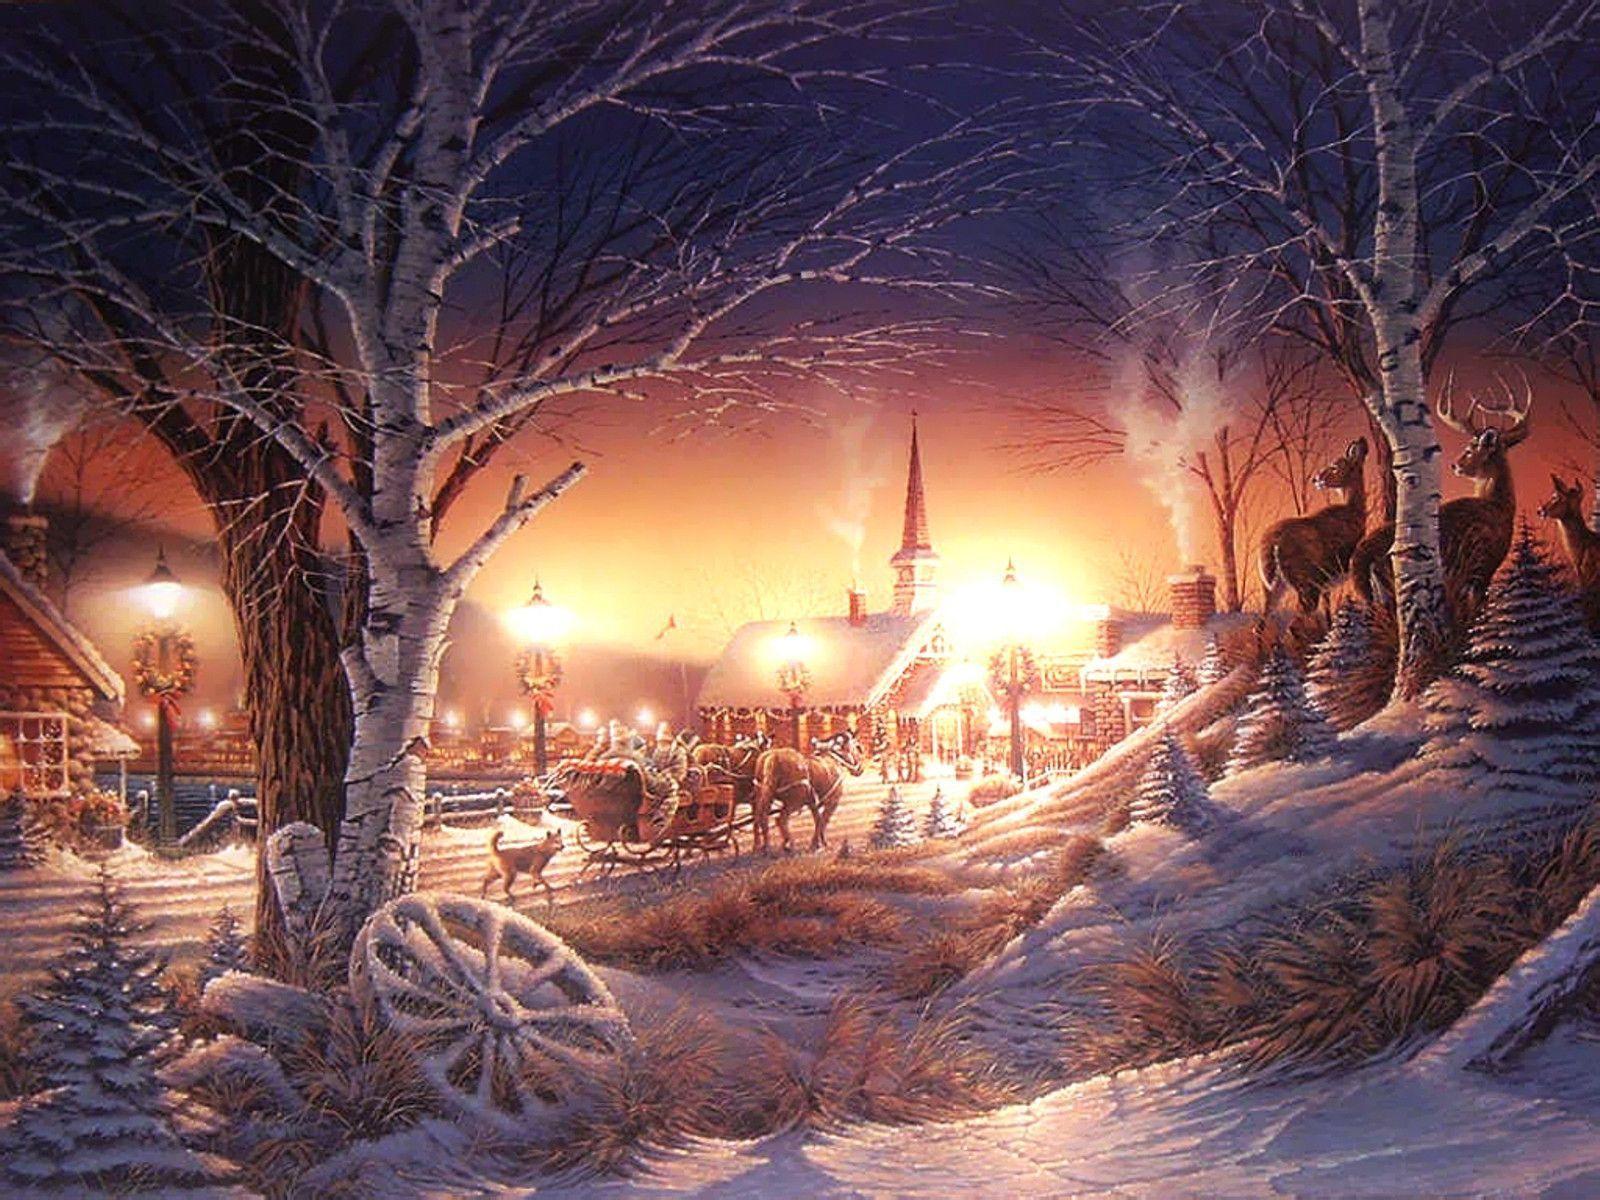 Winter Scenery Wallpaper 2560